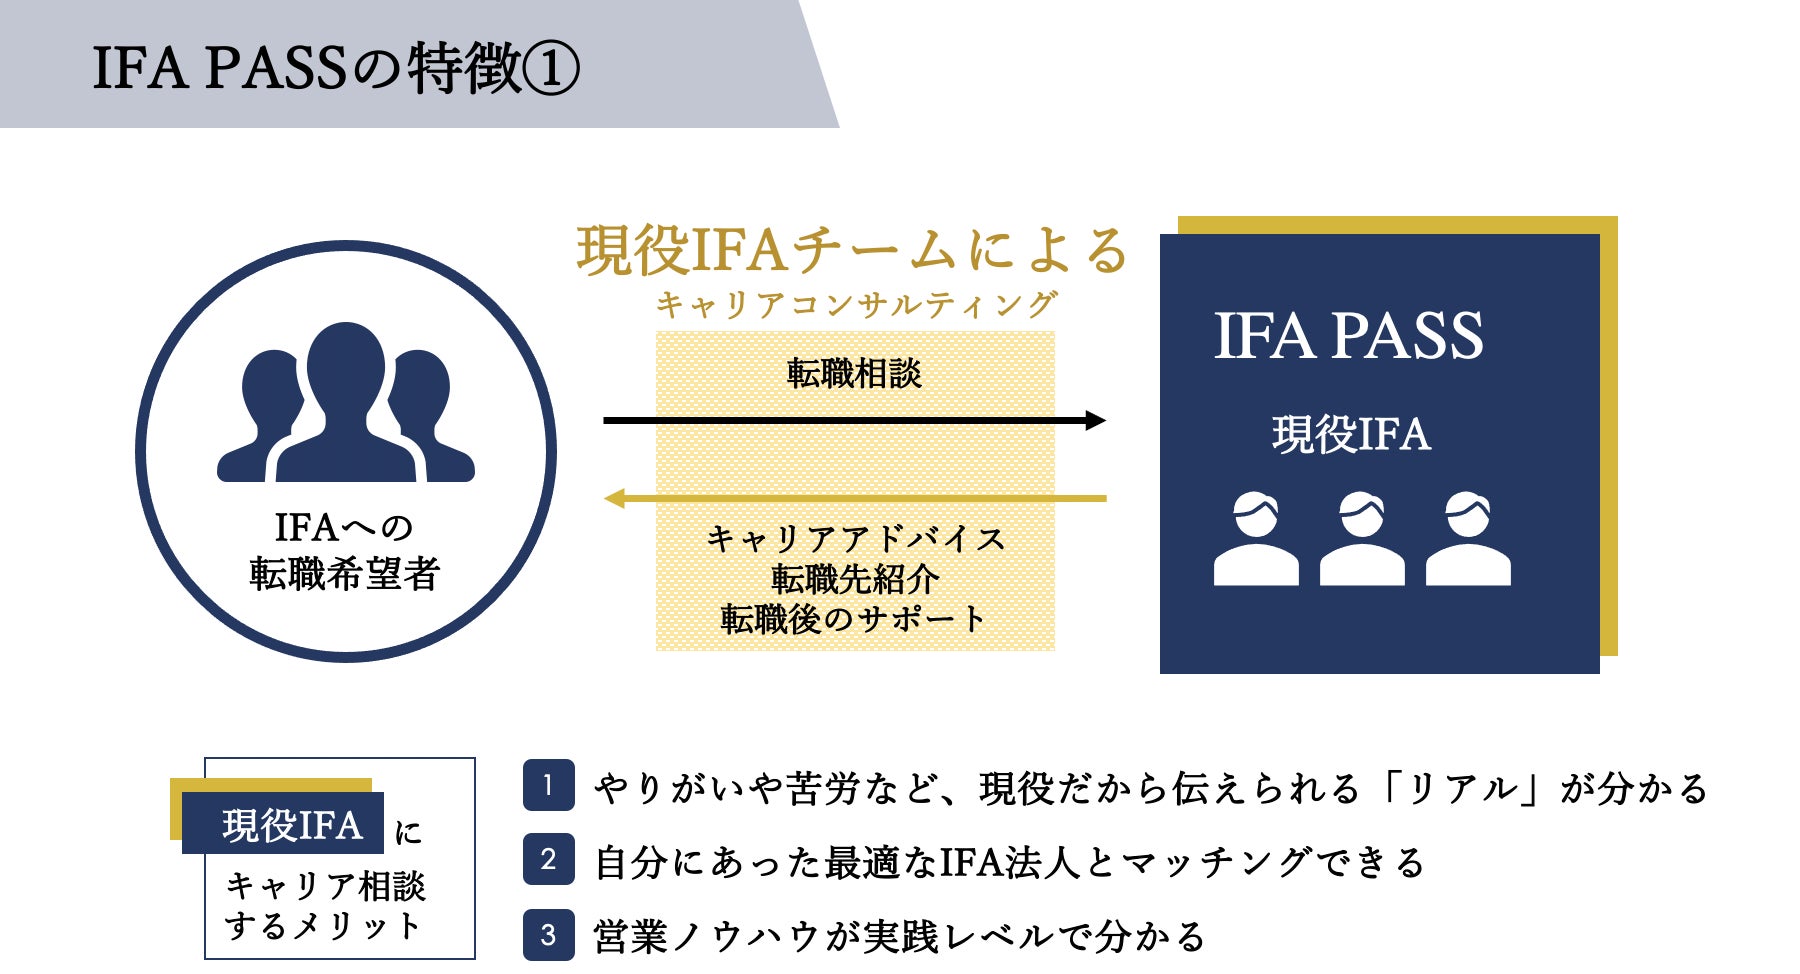 株式会社LIONEL（東京都墨田区、代表取締役：牧野章吾）は、IFA転職サービス「IFA PASS」のサービス内容を拡充したことを発表いたします。